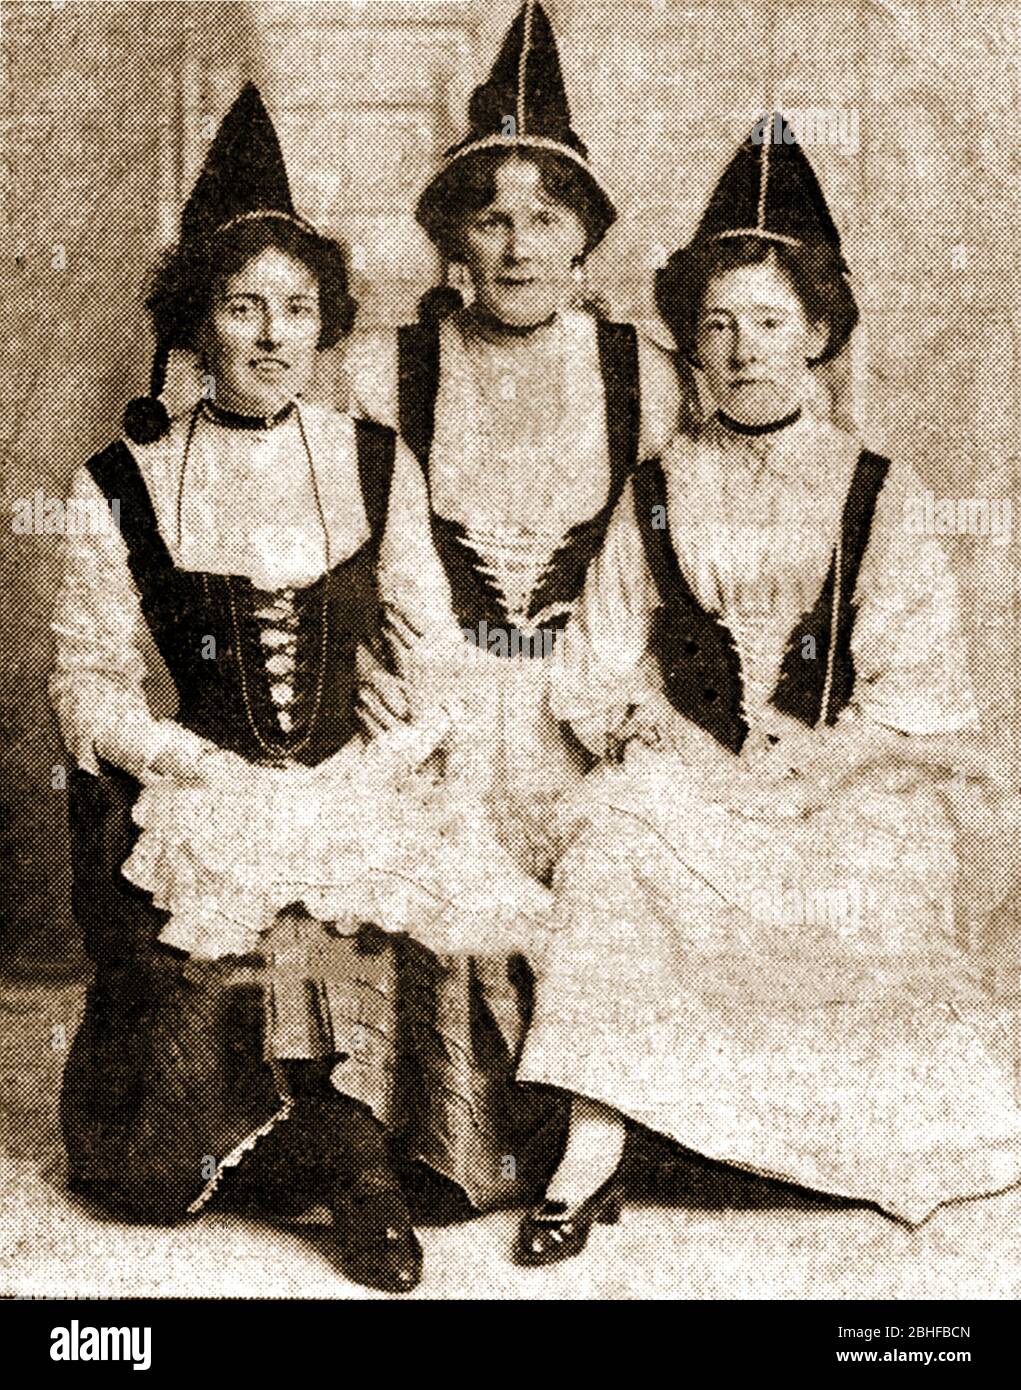 Une photographie rare de trois guides Ranger nommés Circa 1900 , de Whitby, dans le Yorkshire du Nord, qui avait remporté le prix (original) du duc d'Édimbourg pour les filles. - Alfred Ernest Albert (1844 – 1900) régna comme duc de Saxe-Coburg et Gotha de 1893 à 1900. Il était le deuxième fils (quatrième enfant) de la reine Victoria de Grande-Bretagne et fut nommé duc d'Édimbourg lors de l'anniversaire de la reine avec distinction le 24 mai 1866. Sur la photo (l à r) sont Mlle Isabel Harker (jamais mariée), Gertie Pennock (plus tard Mme Edwin Todd) et Amy Smith (plus tard Mme G Heselton). La pertinence des costumes est inconnue. Banque D'Images